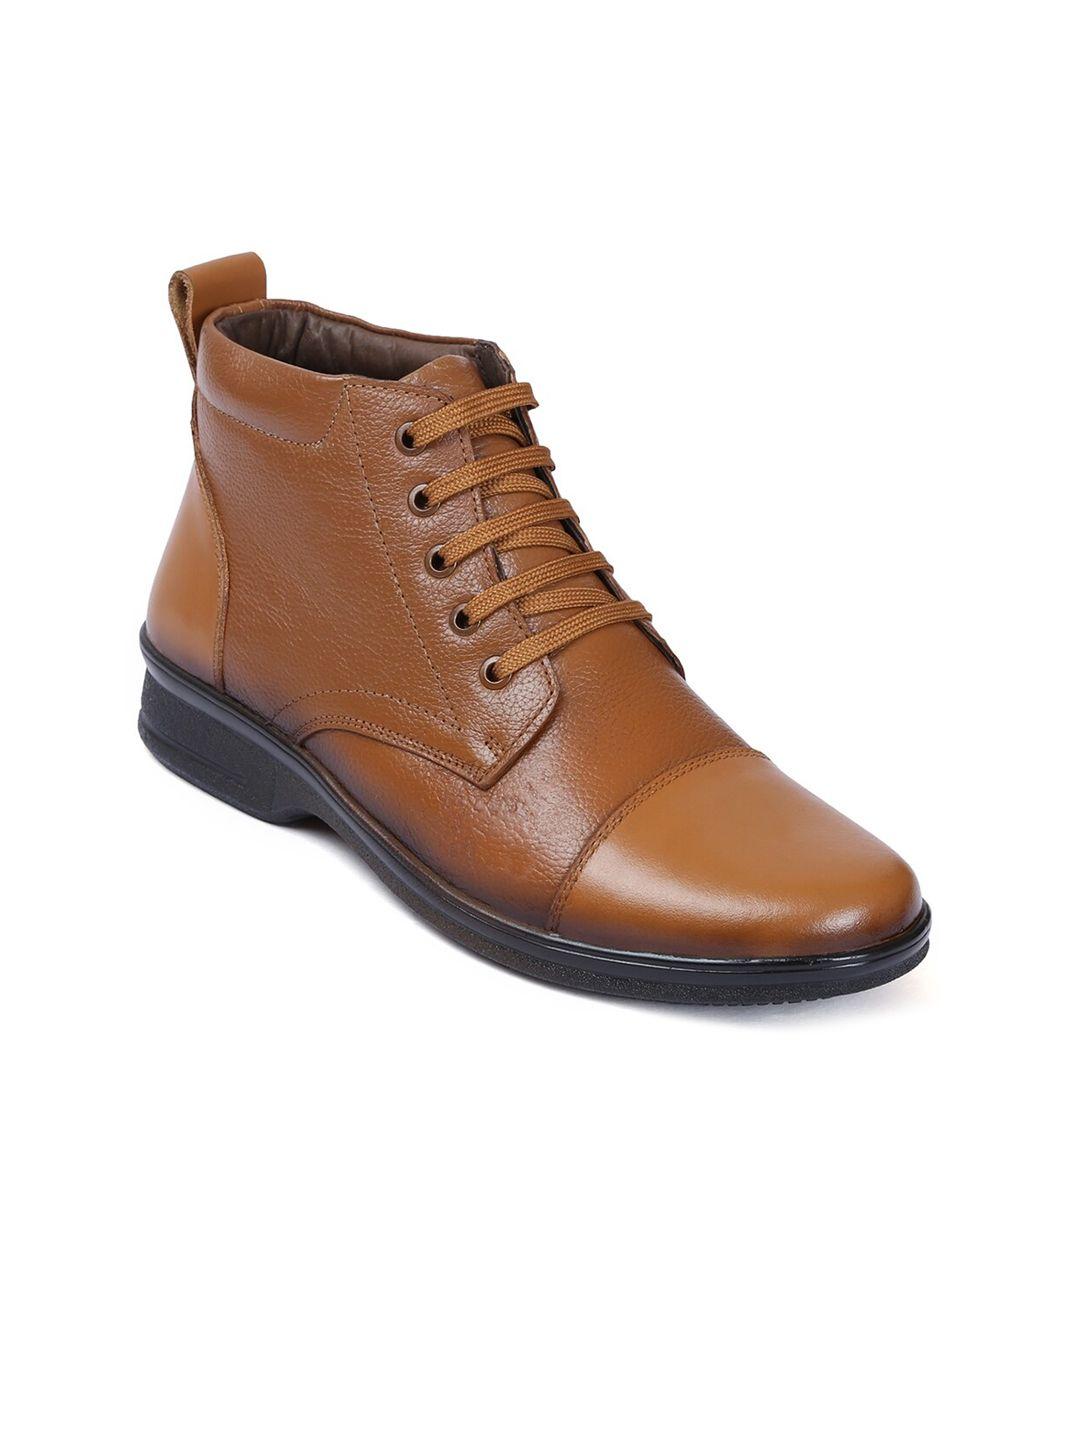 zoom shoes men leather derbys boots